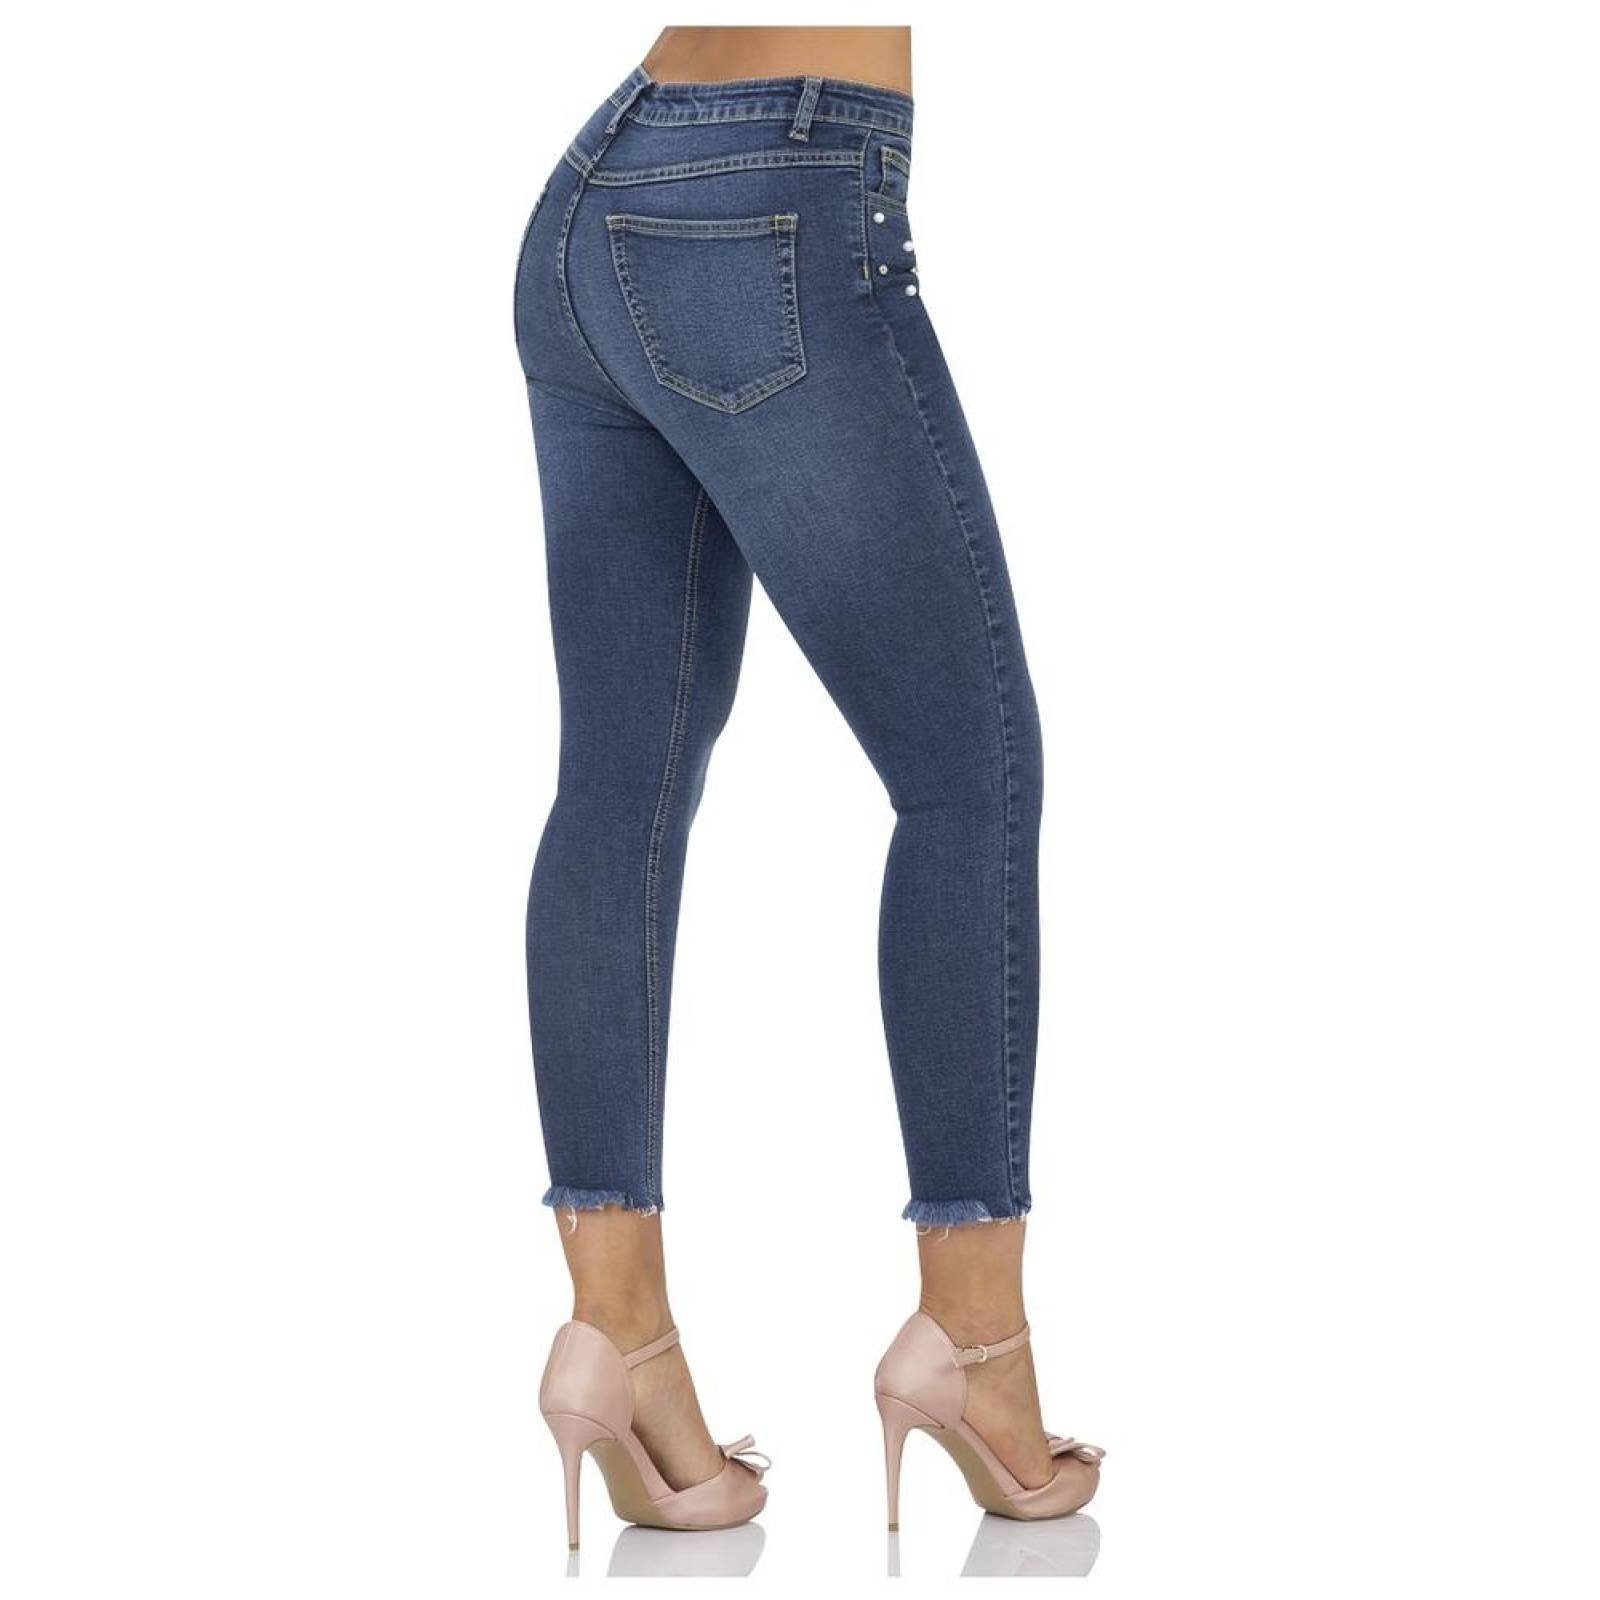 Jeans Moda Mujer Salvaje Tentación Stone 63103202 Mezclilla Stretch 